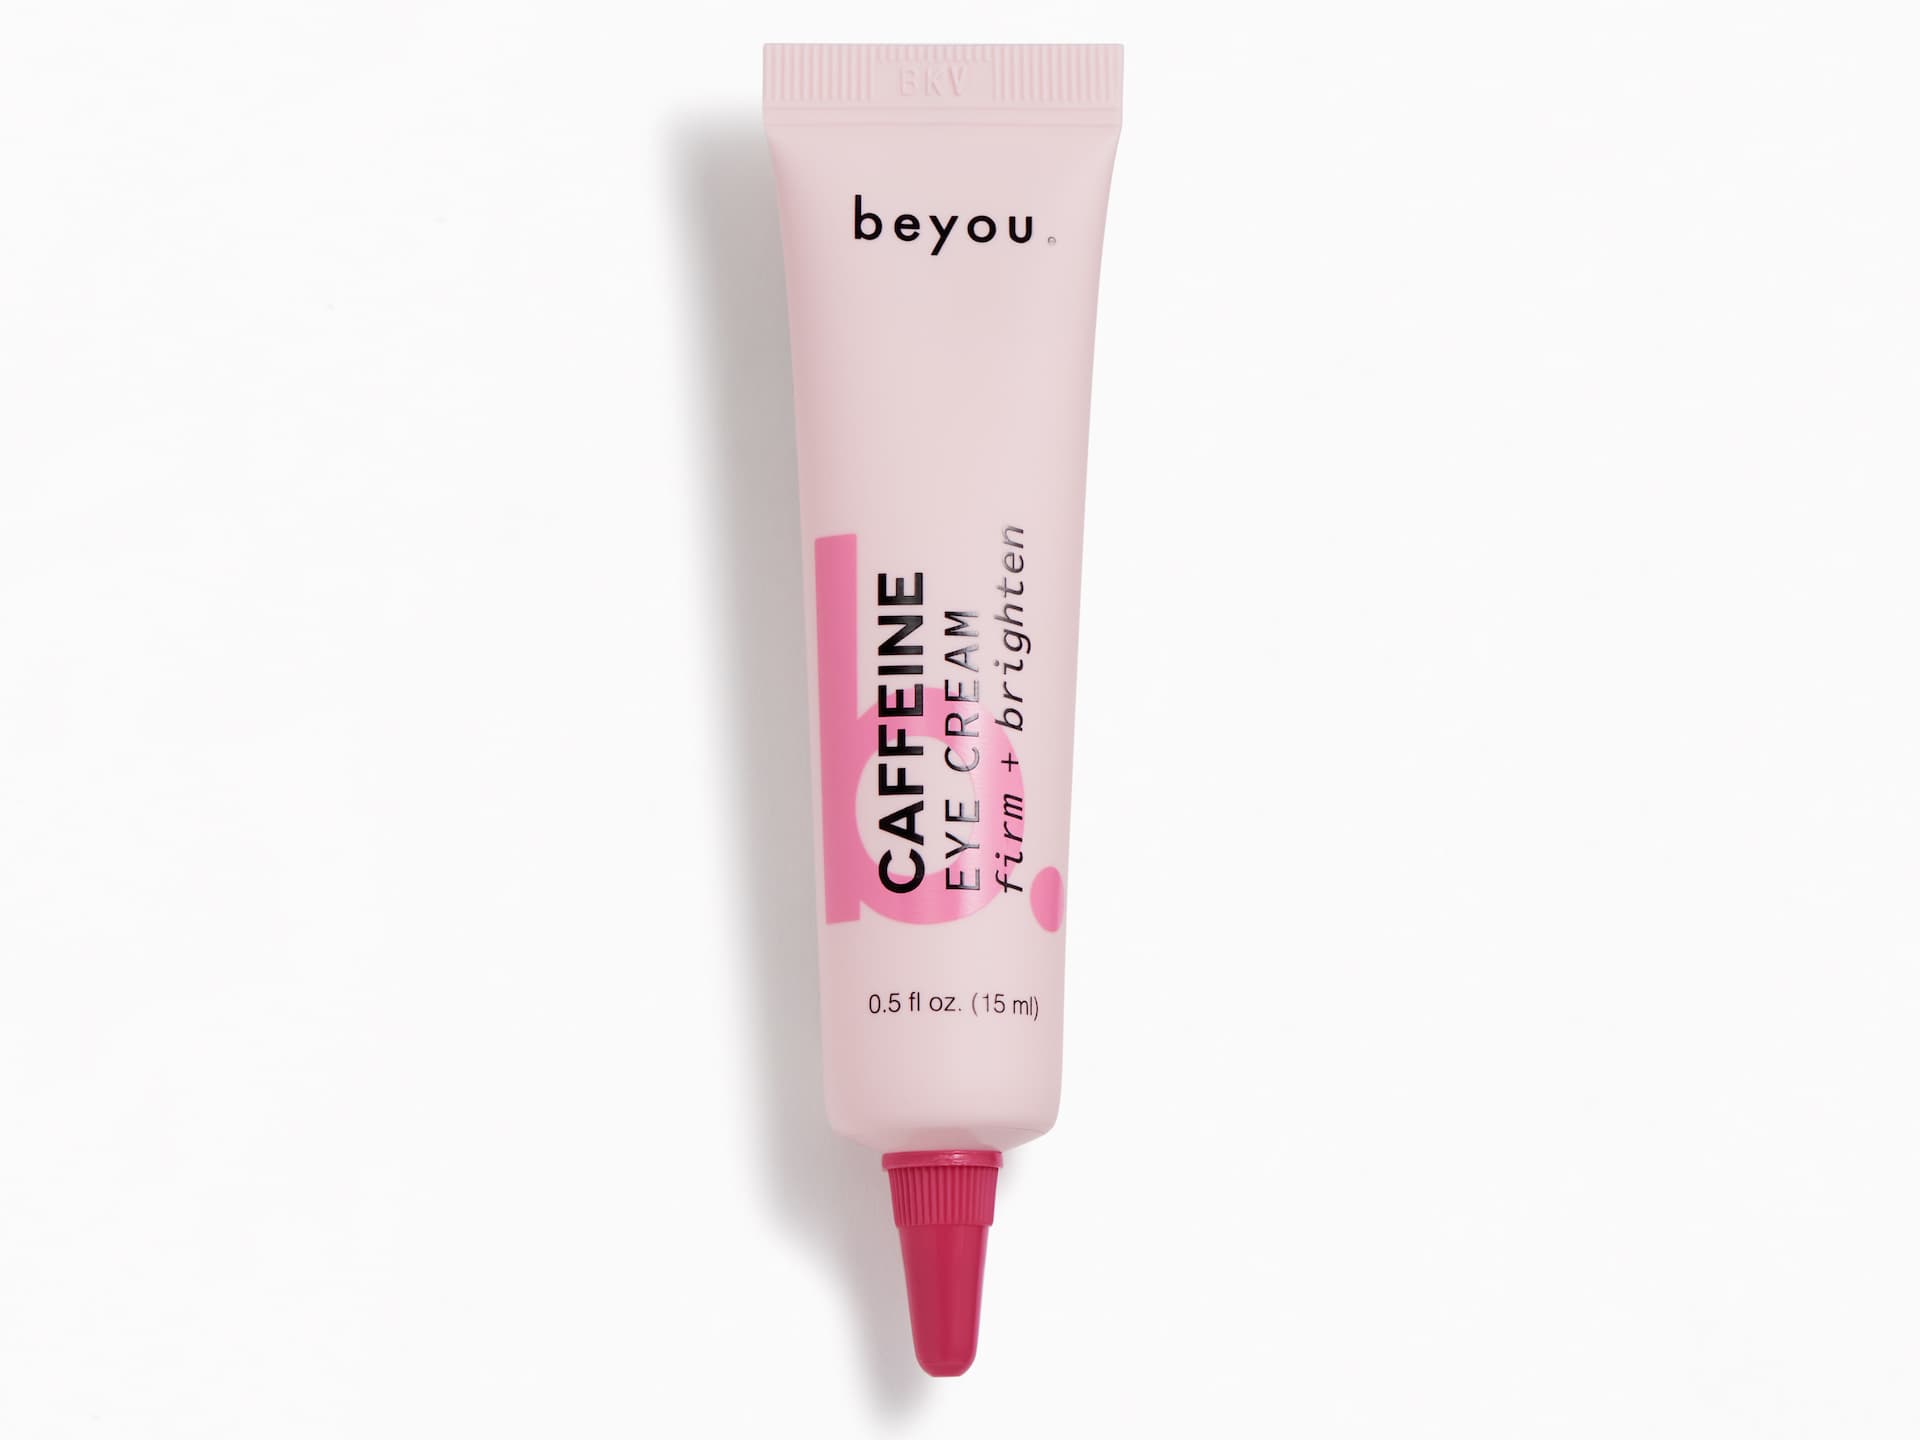 BEYOU_Caffeine Eye Cream